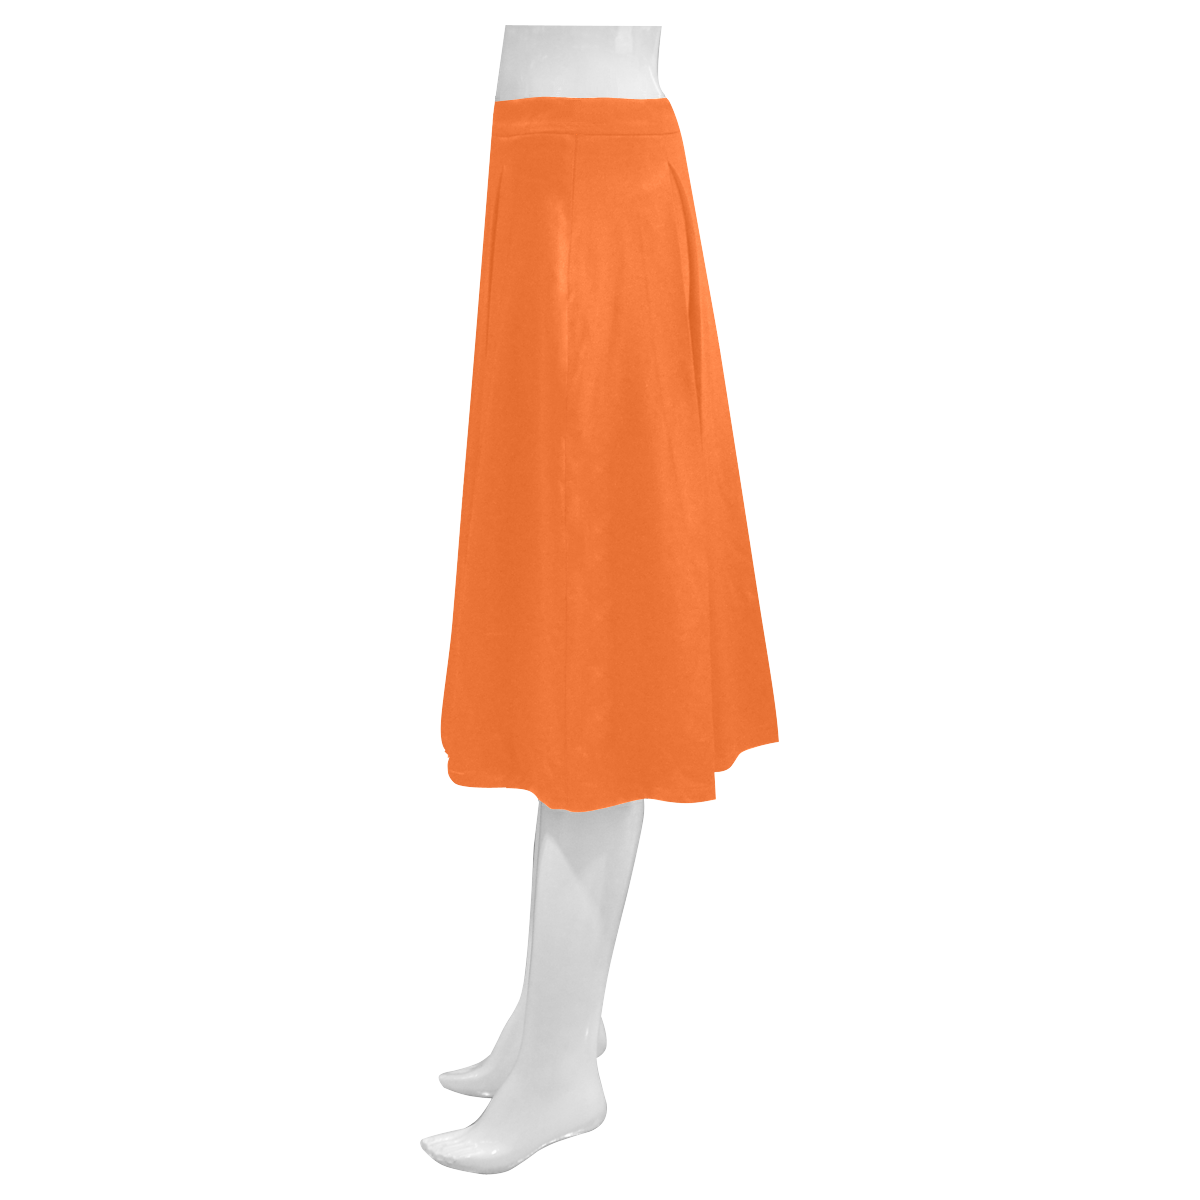 New! Skirt in "happy color" : Designers arrival for 2016. Orange long women Skirt Edition. Mnemosyne Women's Crepe Skirt (Model D16)